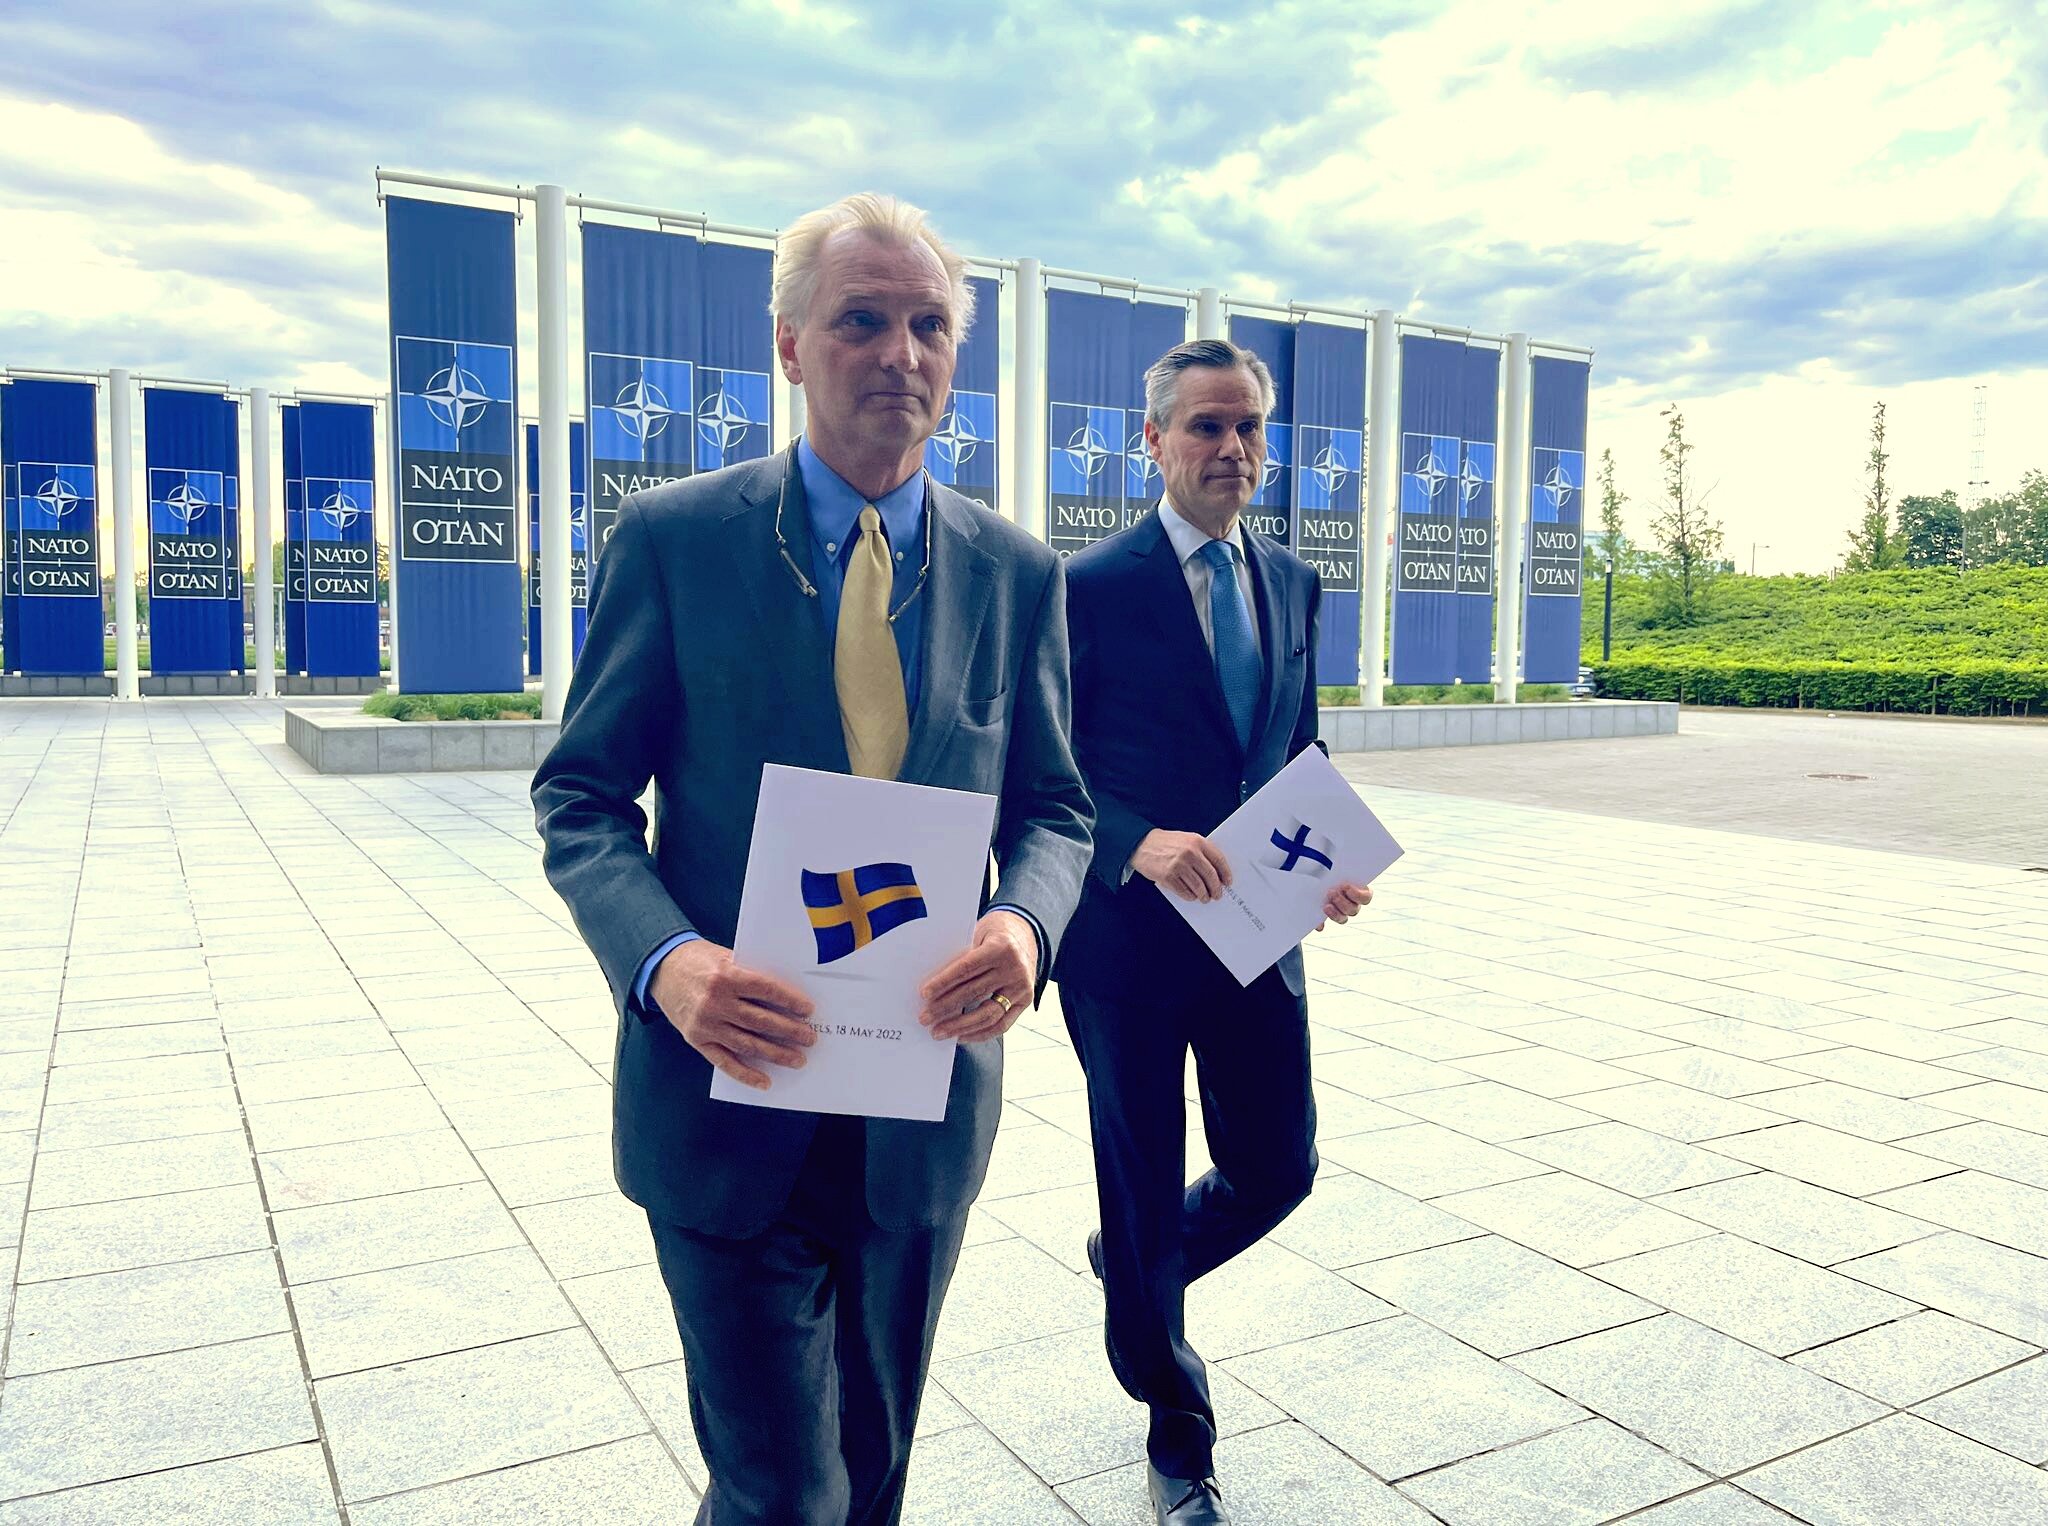 Suecia y Finlandia entregaron formalmente su solicitud de ingreso a la OTAN